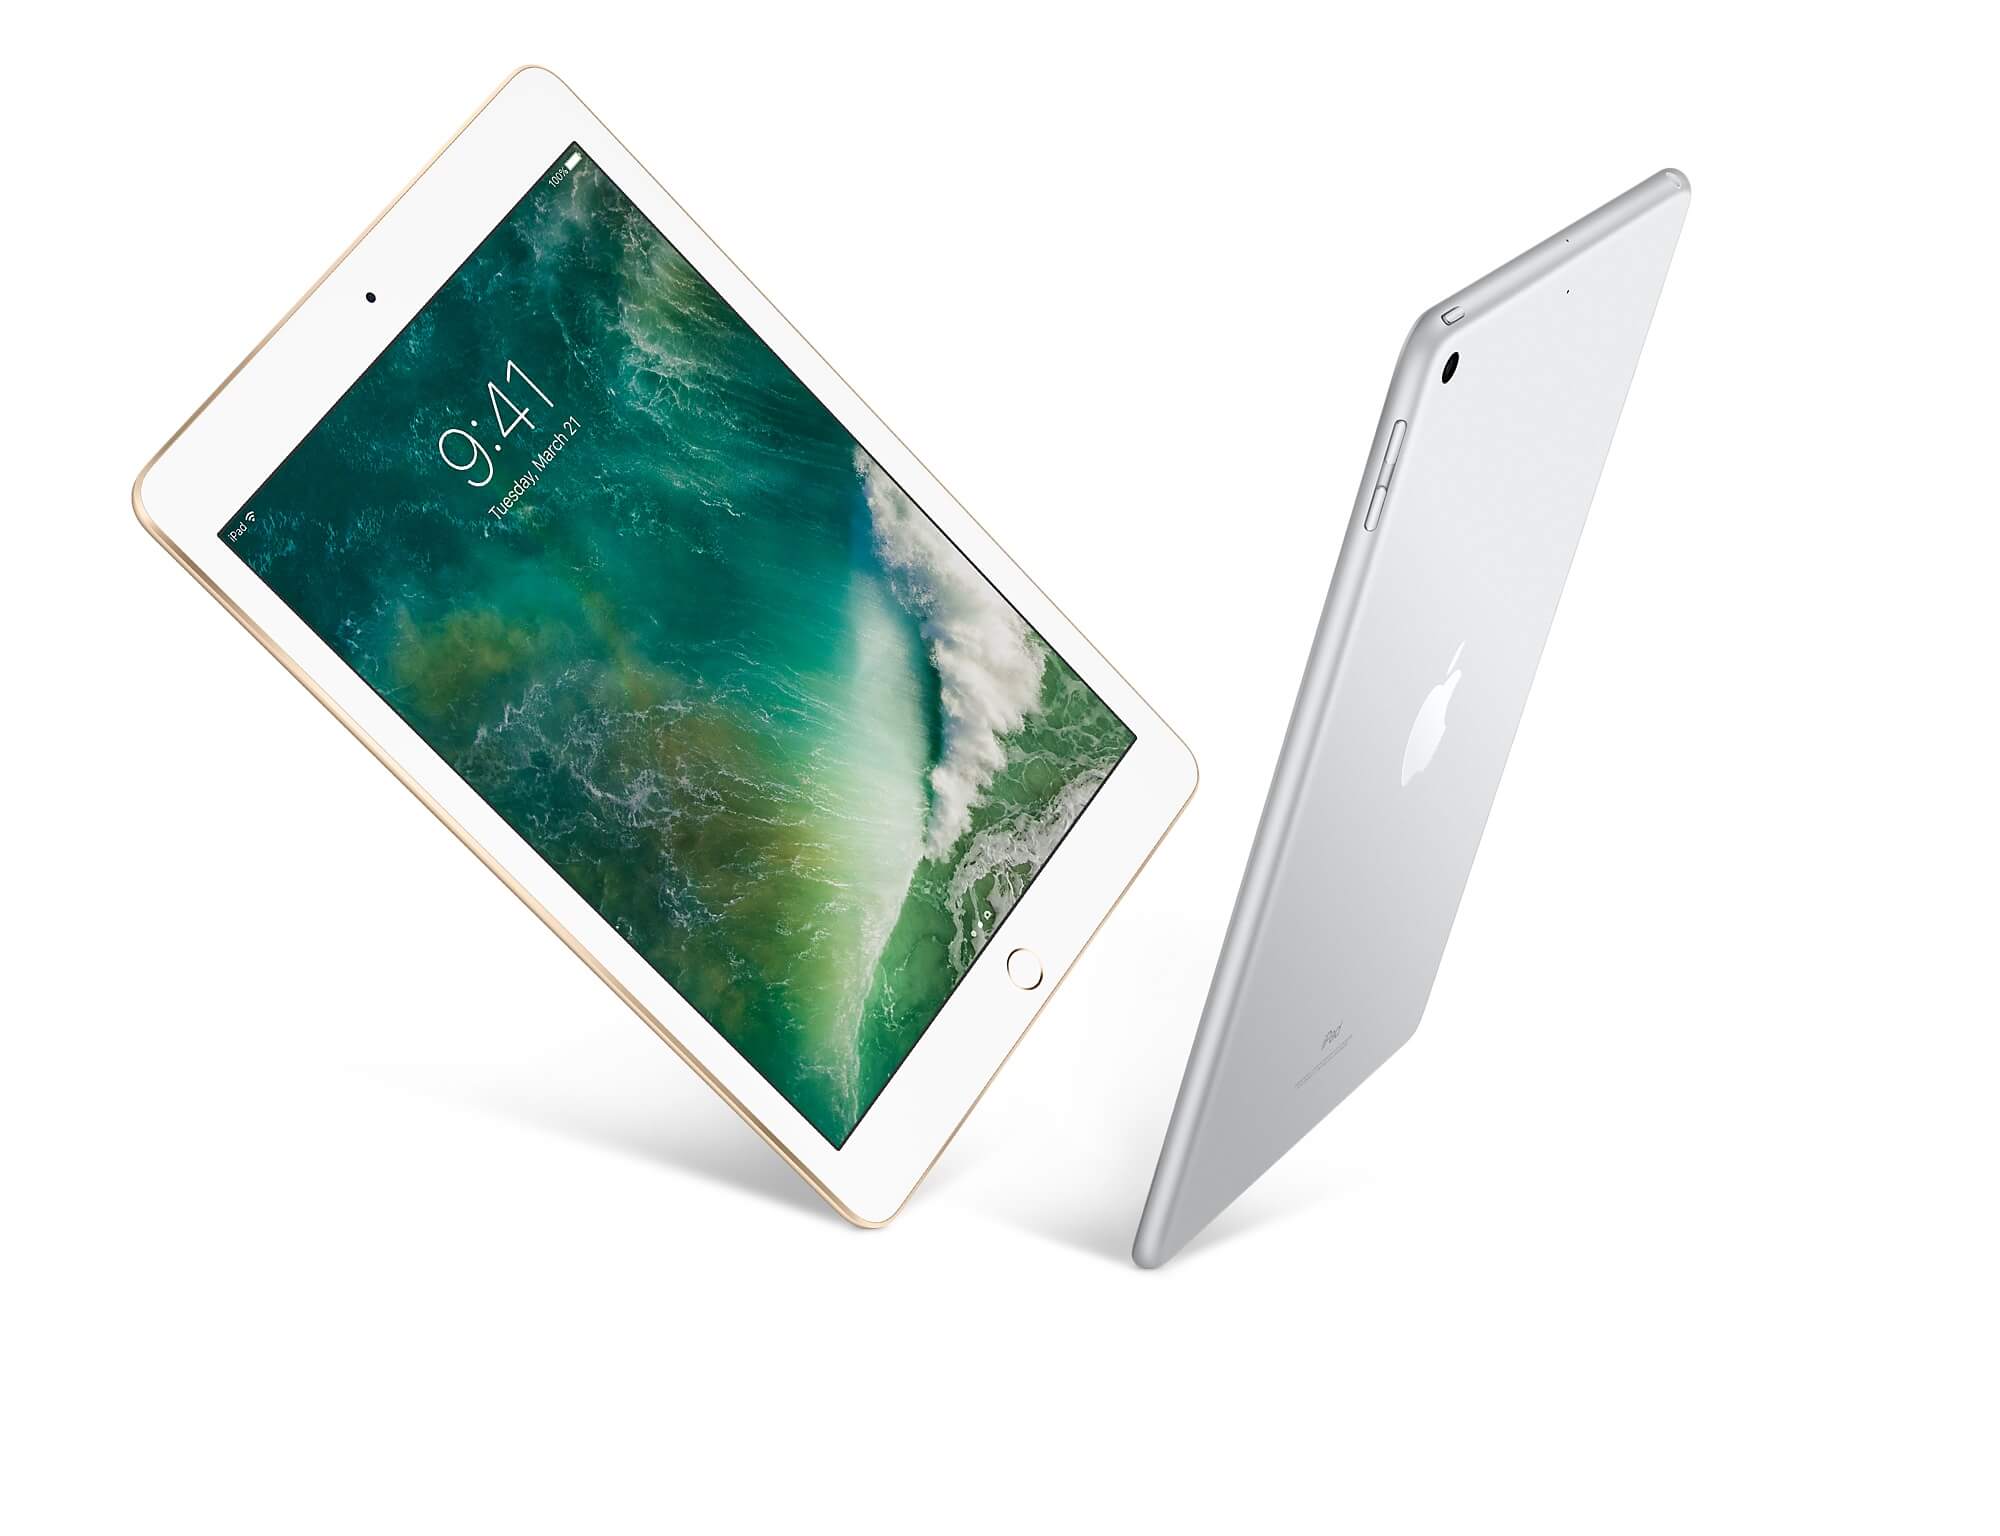 Apple iPad 9.7 2017 Wi-Fi 32gb Silver (UA)